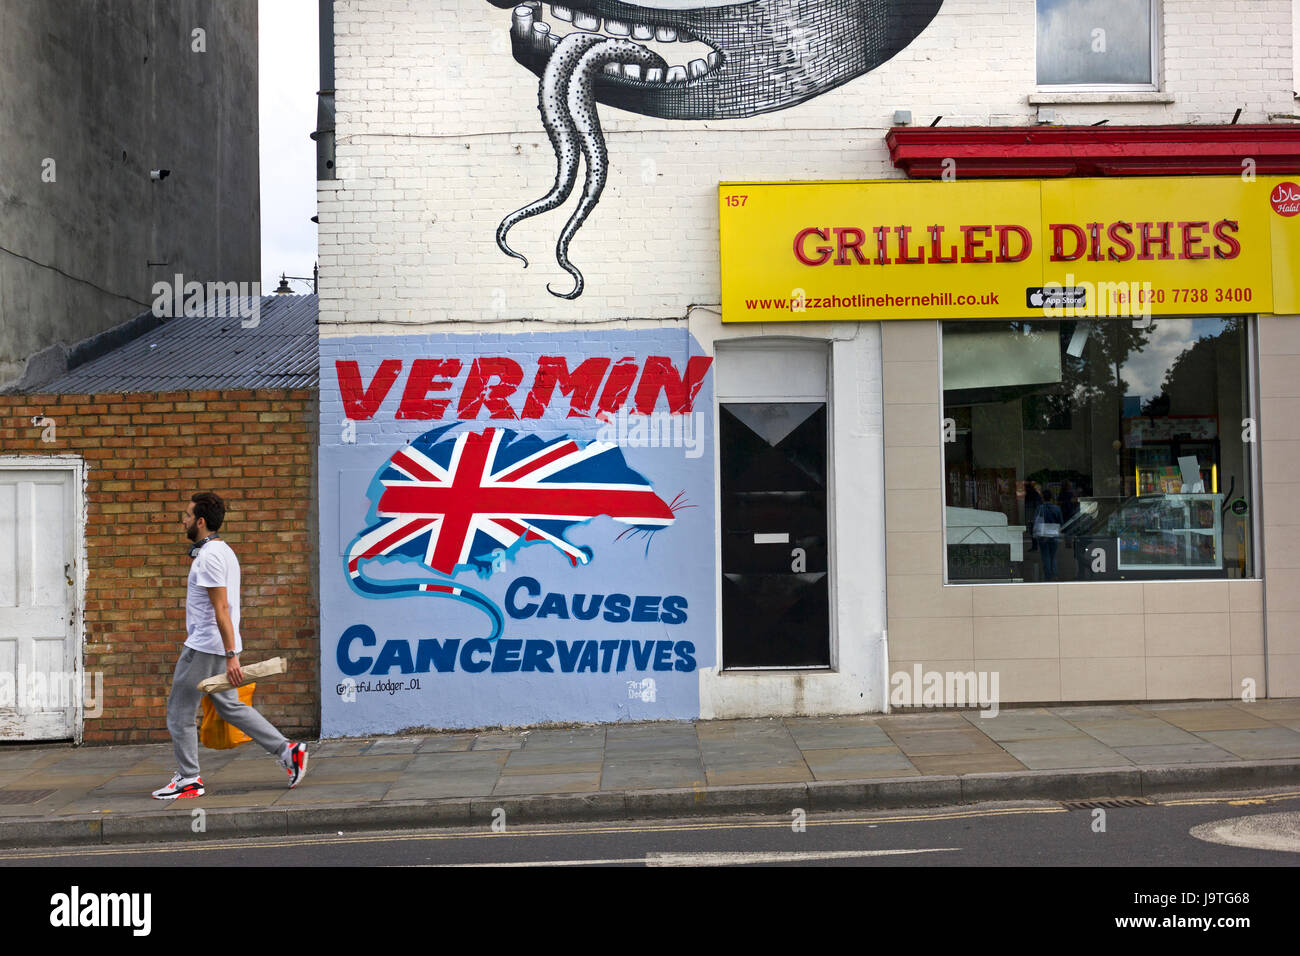 Per 'VERMIN provoca Cancervatives' nuovo murale politico da artista di strada evasore Artful su una parete in Herne Hill, SE London. Al di sopra di esso di un fantastico murale ispirato da M. C. Escher da londinese muralista e artista di strada, flemma. Foto Stock